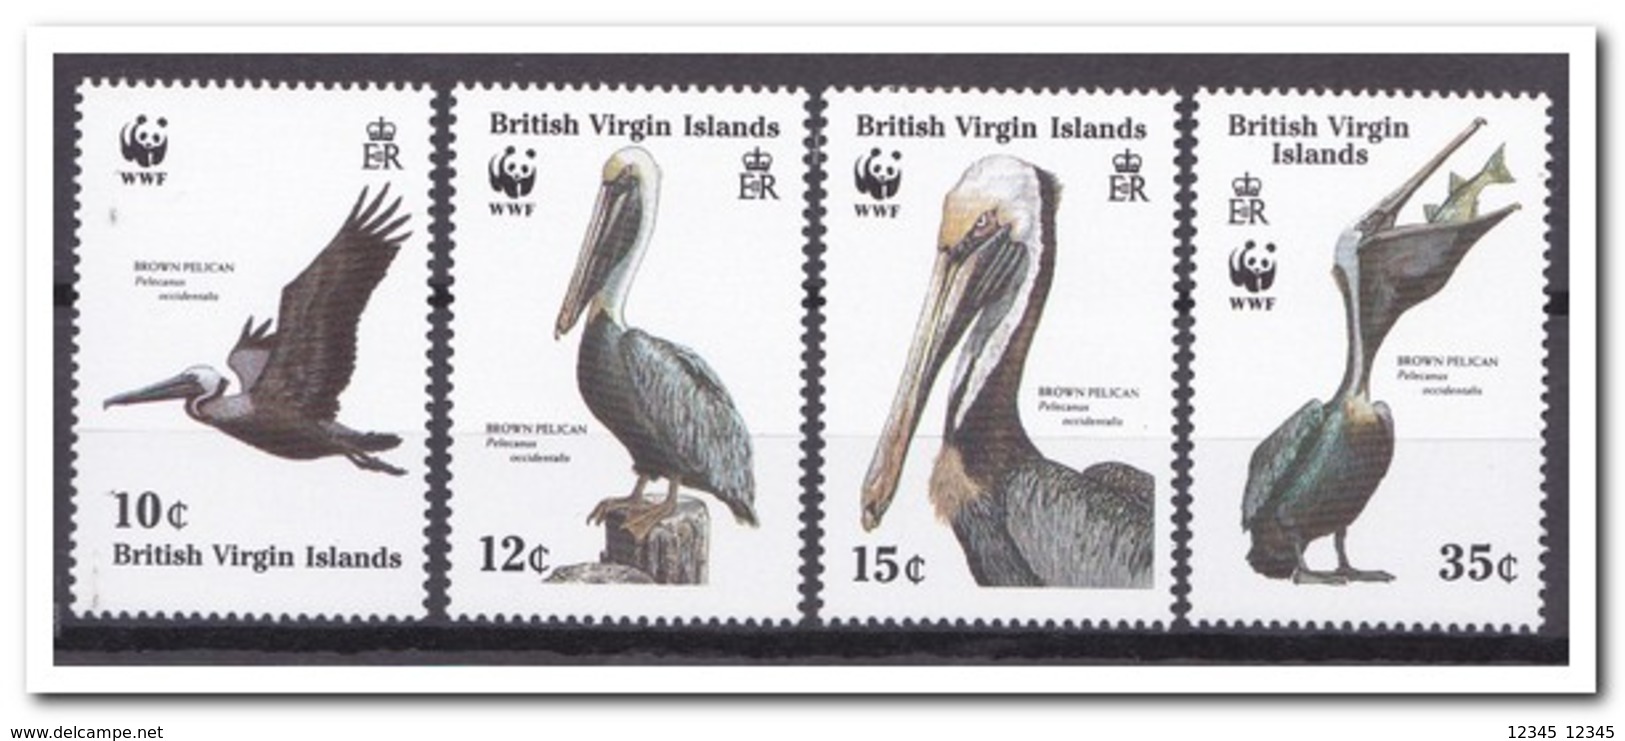 Britse Maagdeneilanden 1988, Postfris MNH, Birds, WWF - Iles Vièrges Britanniques